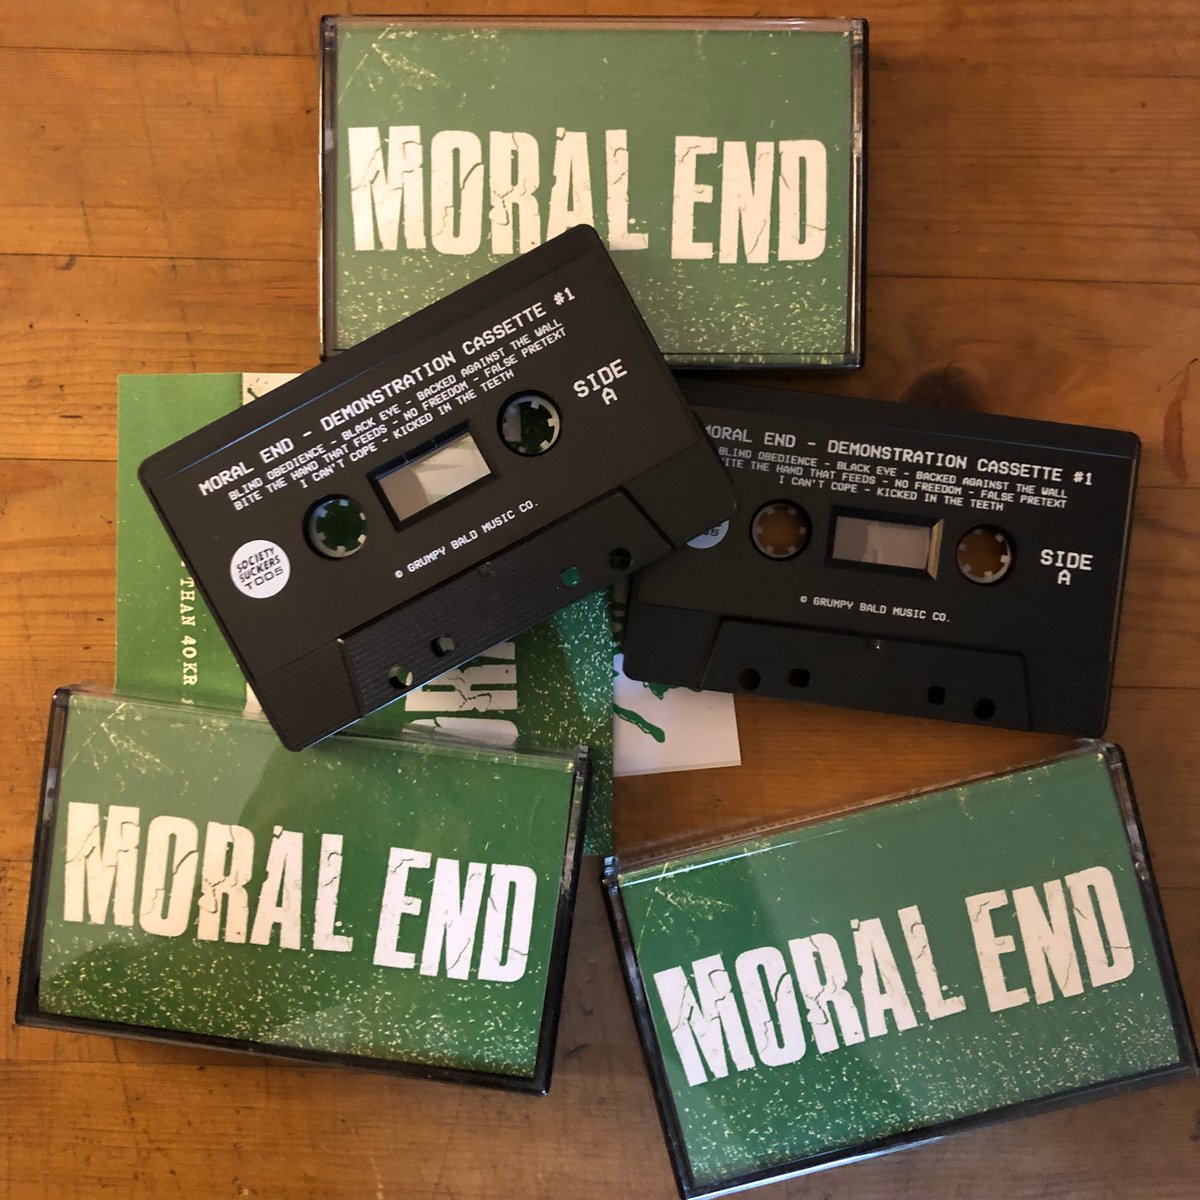 Image of MORAL END "Demonstration Cassette #1" M.C